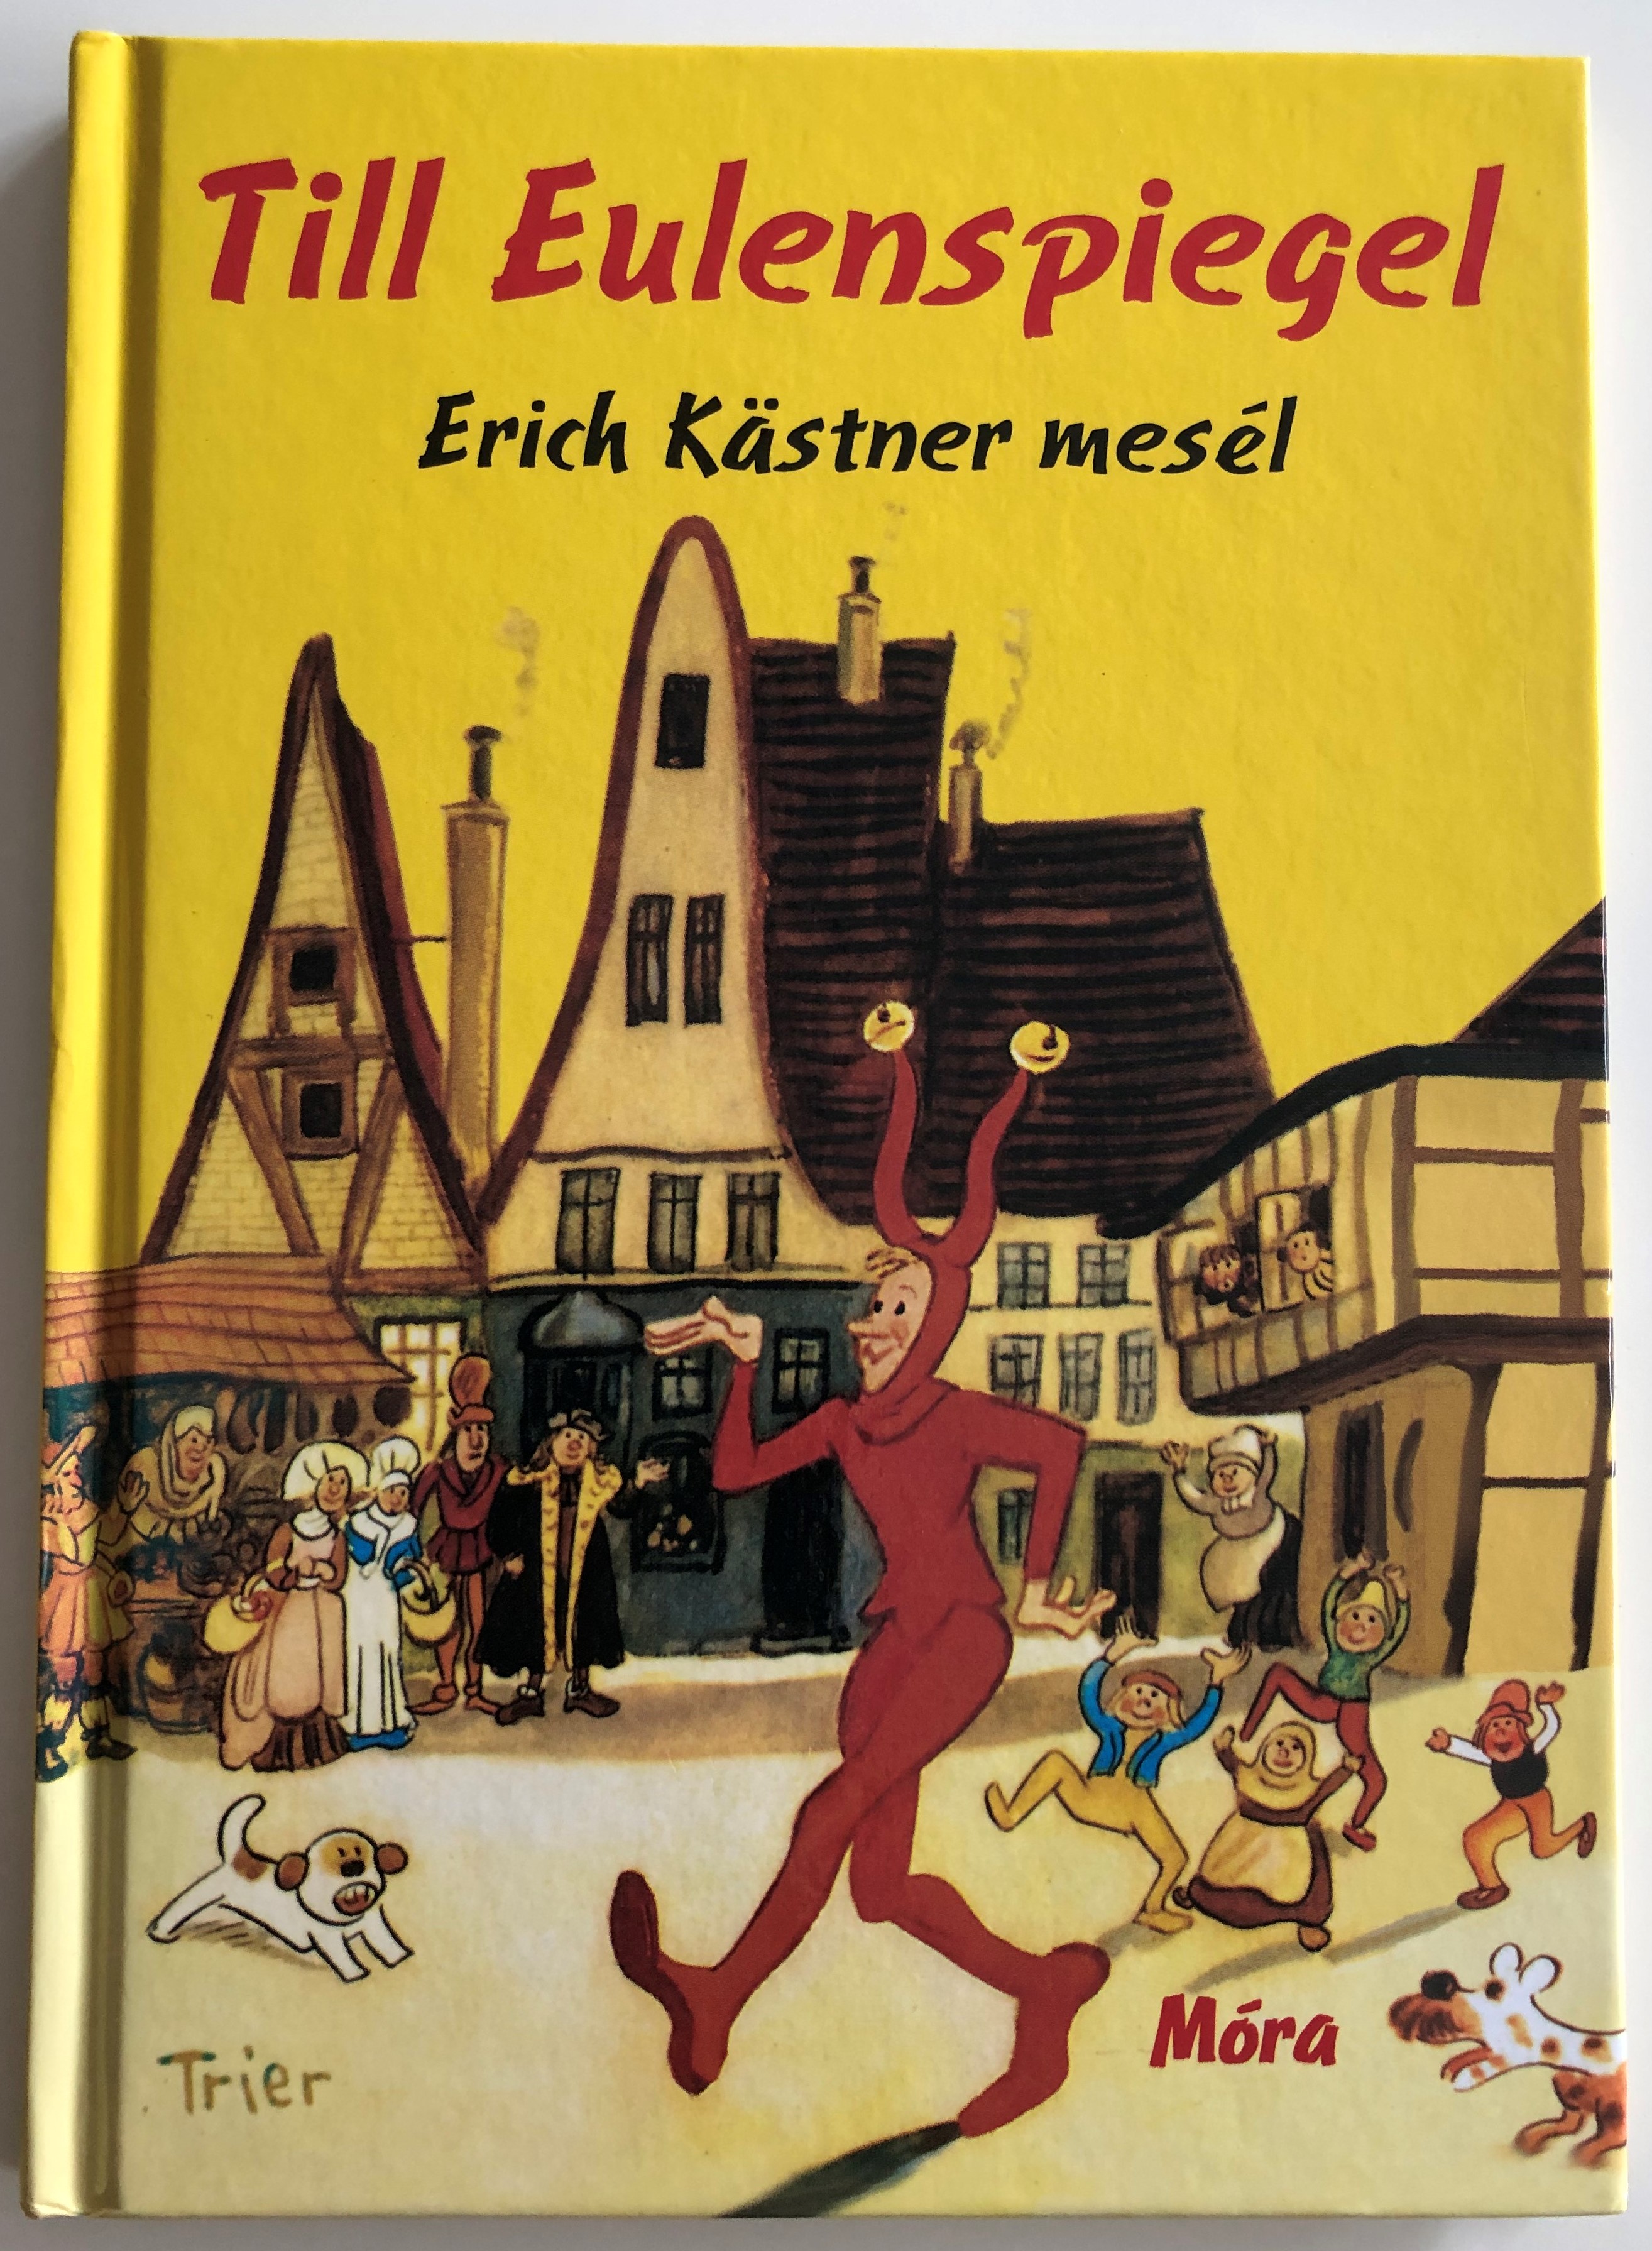 Till Eulenspiegel by Erich Kästner 1.JPG